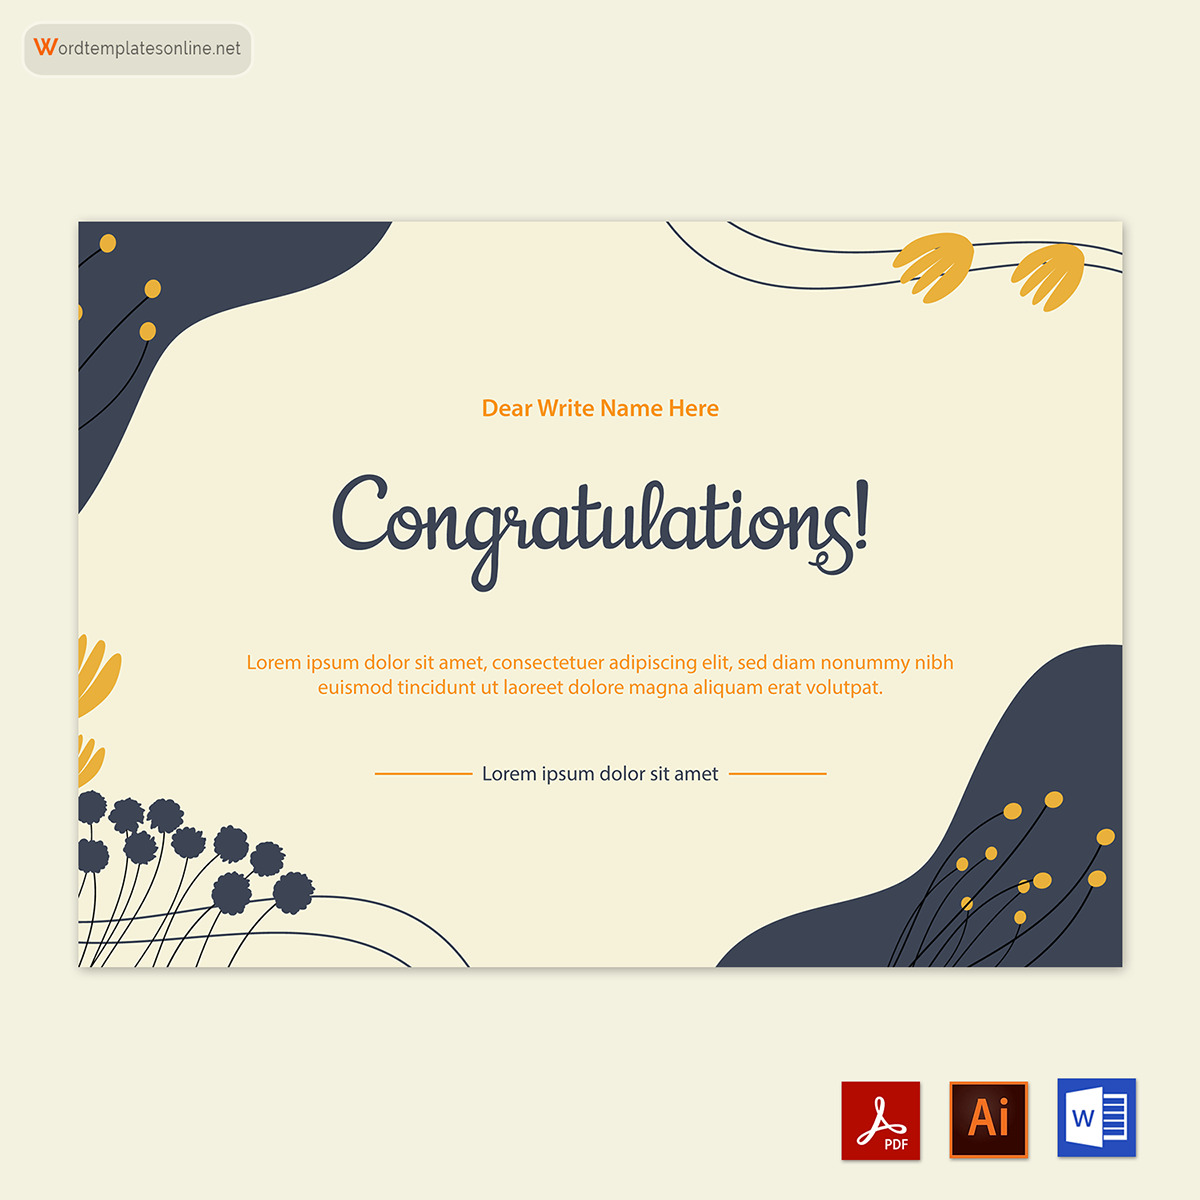 "Congratulations card template in Adobe Illustrator"